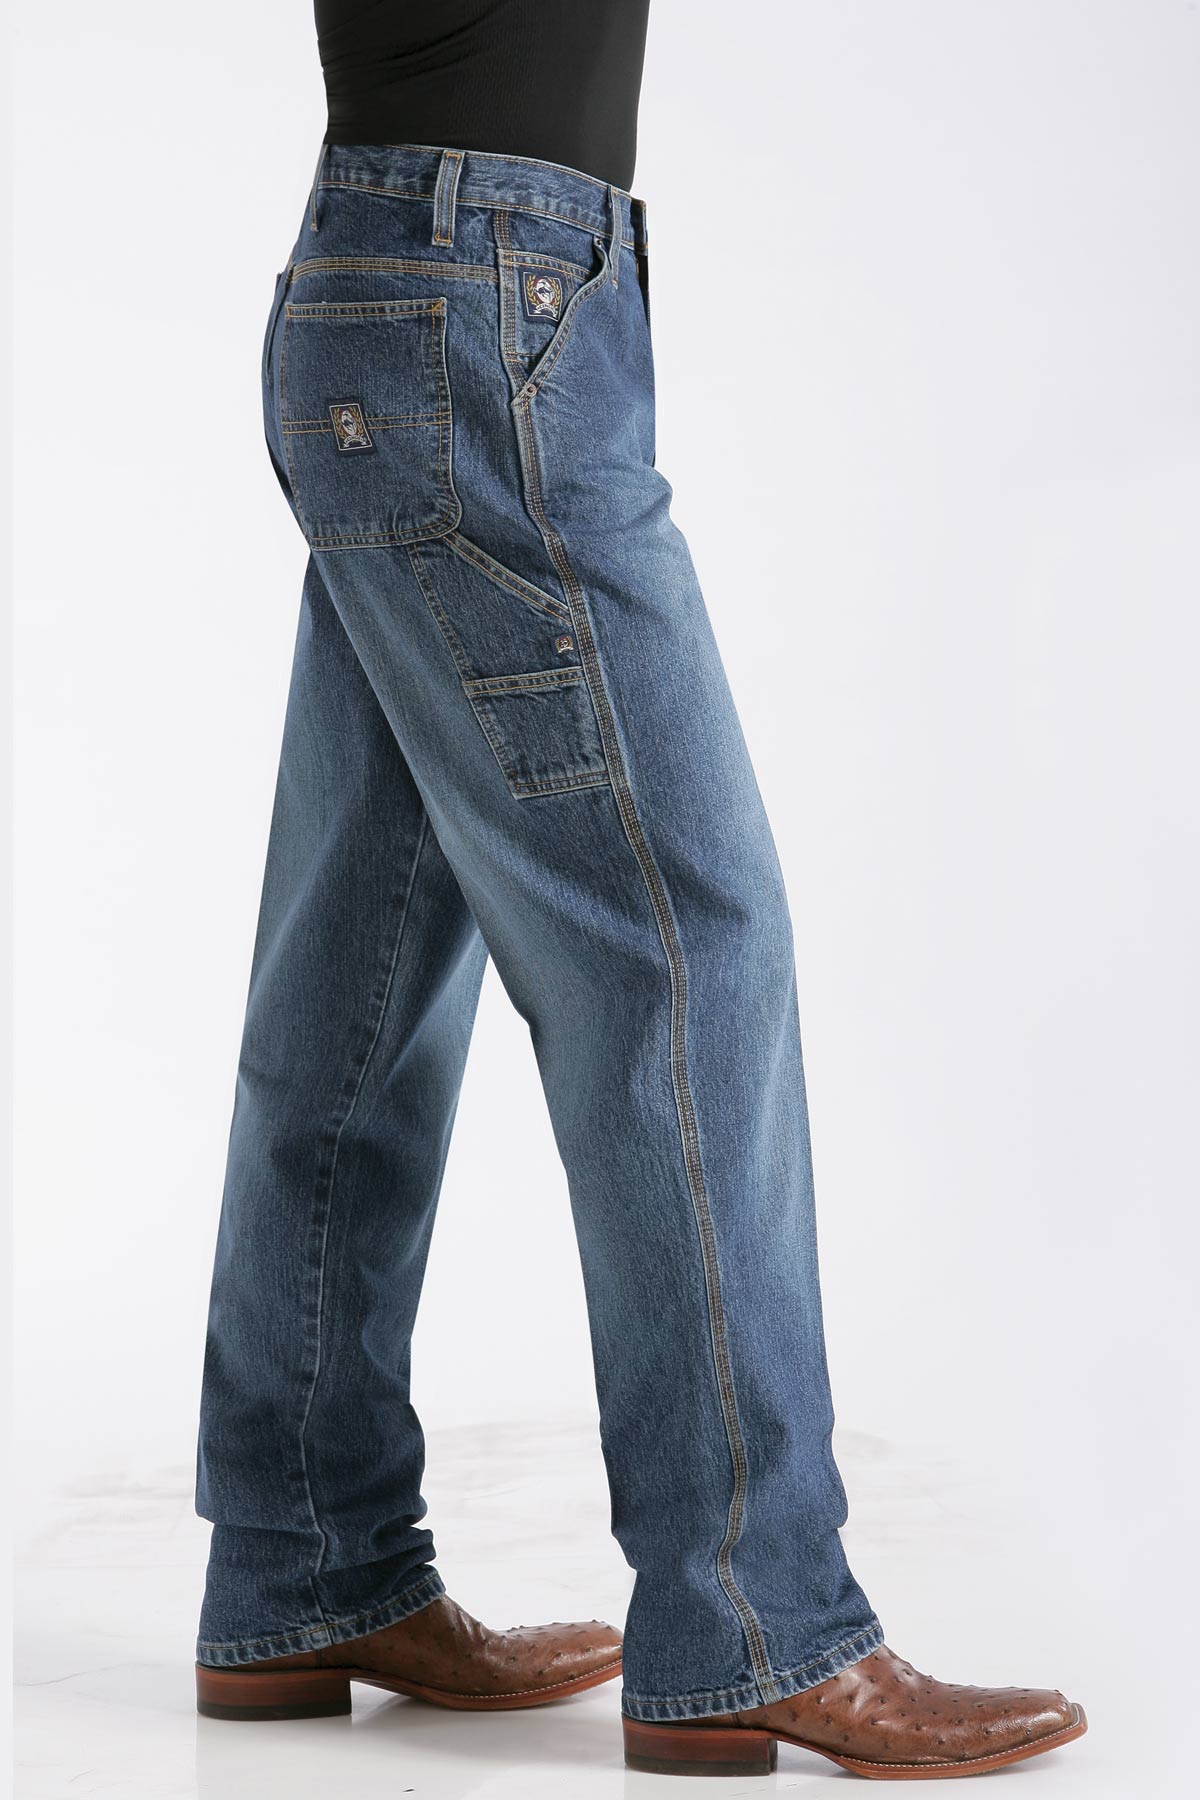 Cinch Blue Label Jeans